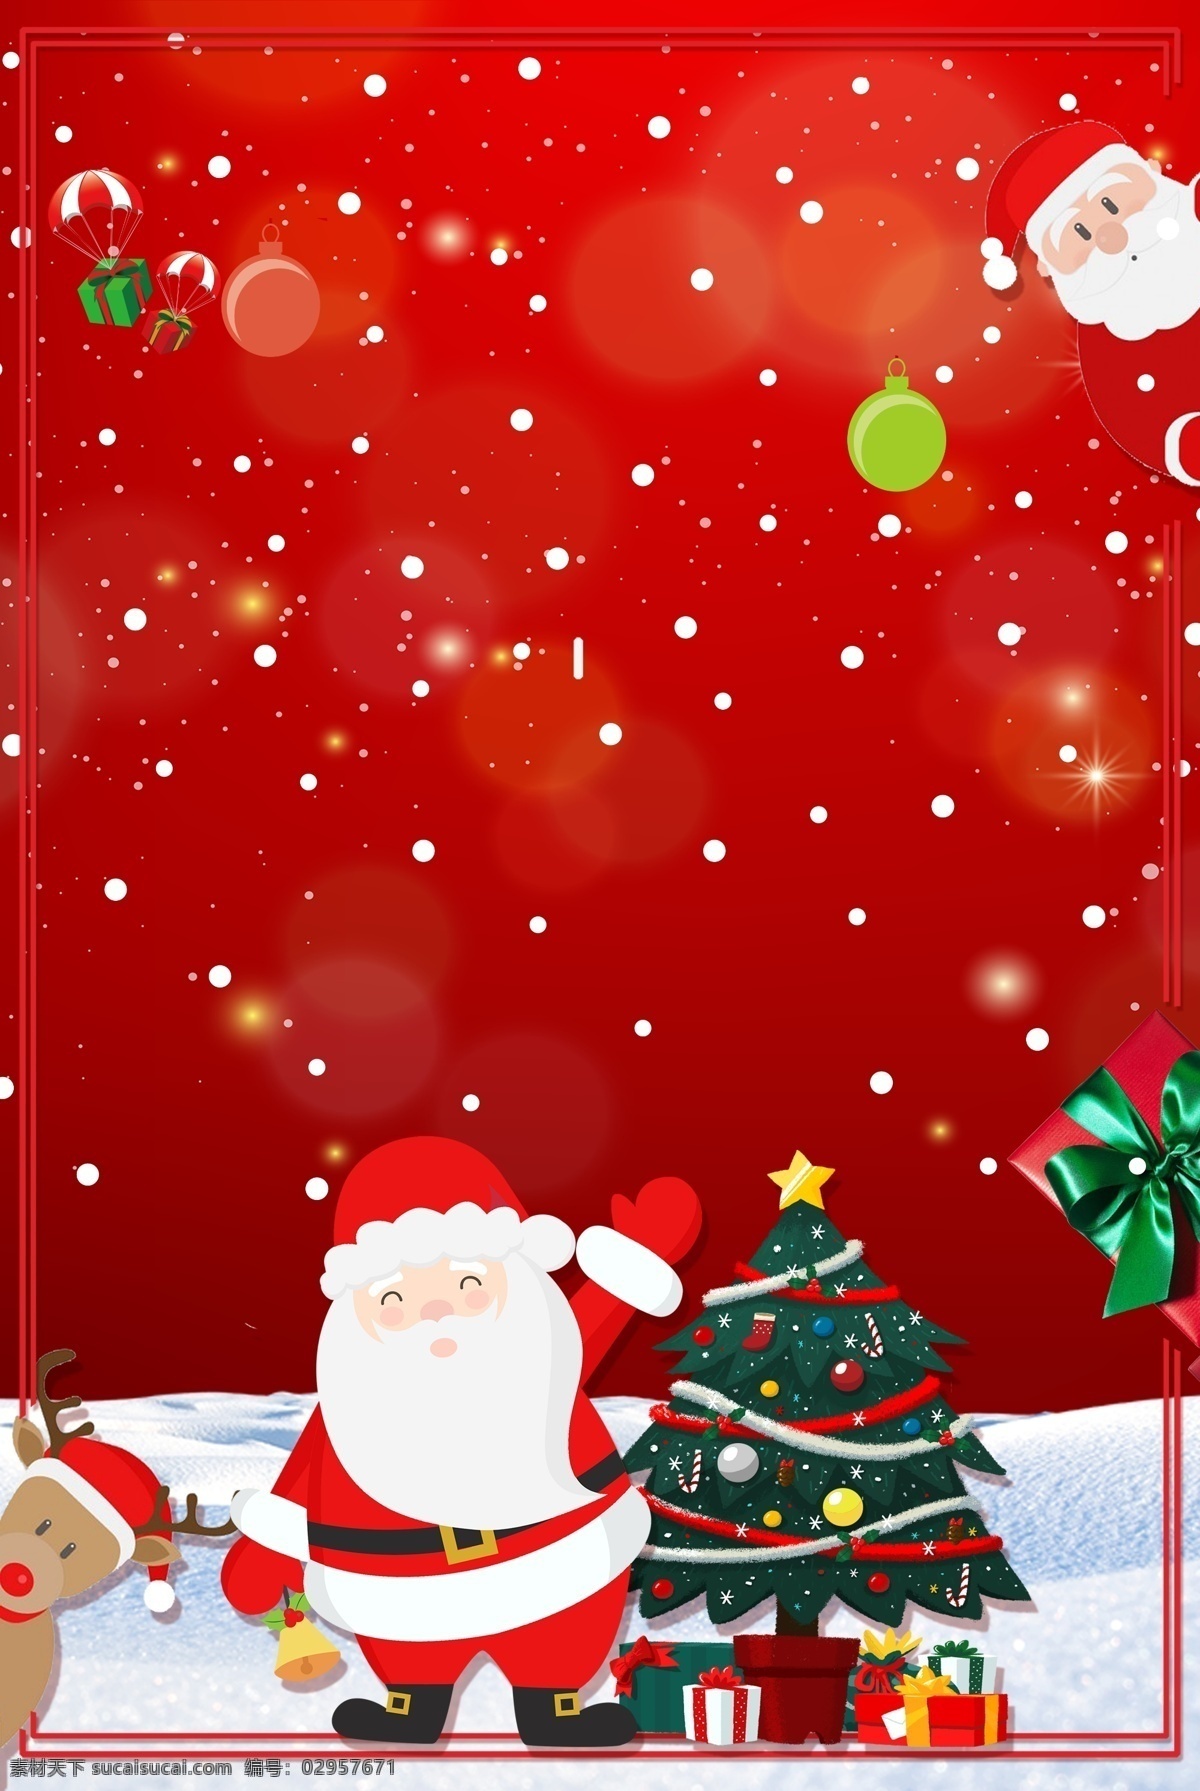 手绘 雪花 圣诞节 红色 背景 红色背景 圣诞节背景 节日背景 背景素材 圣诞礼物 圣诞来了 圣诞活动背景